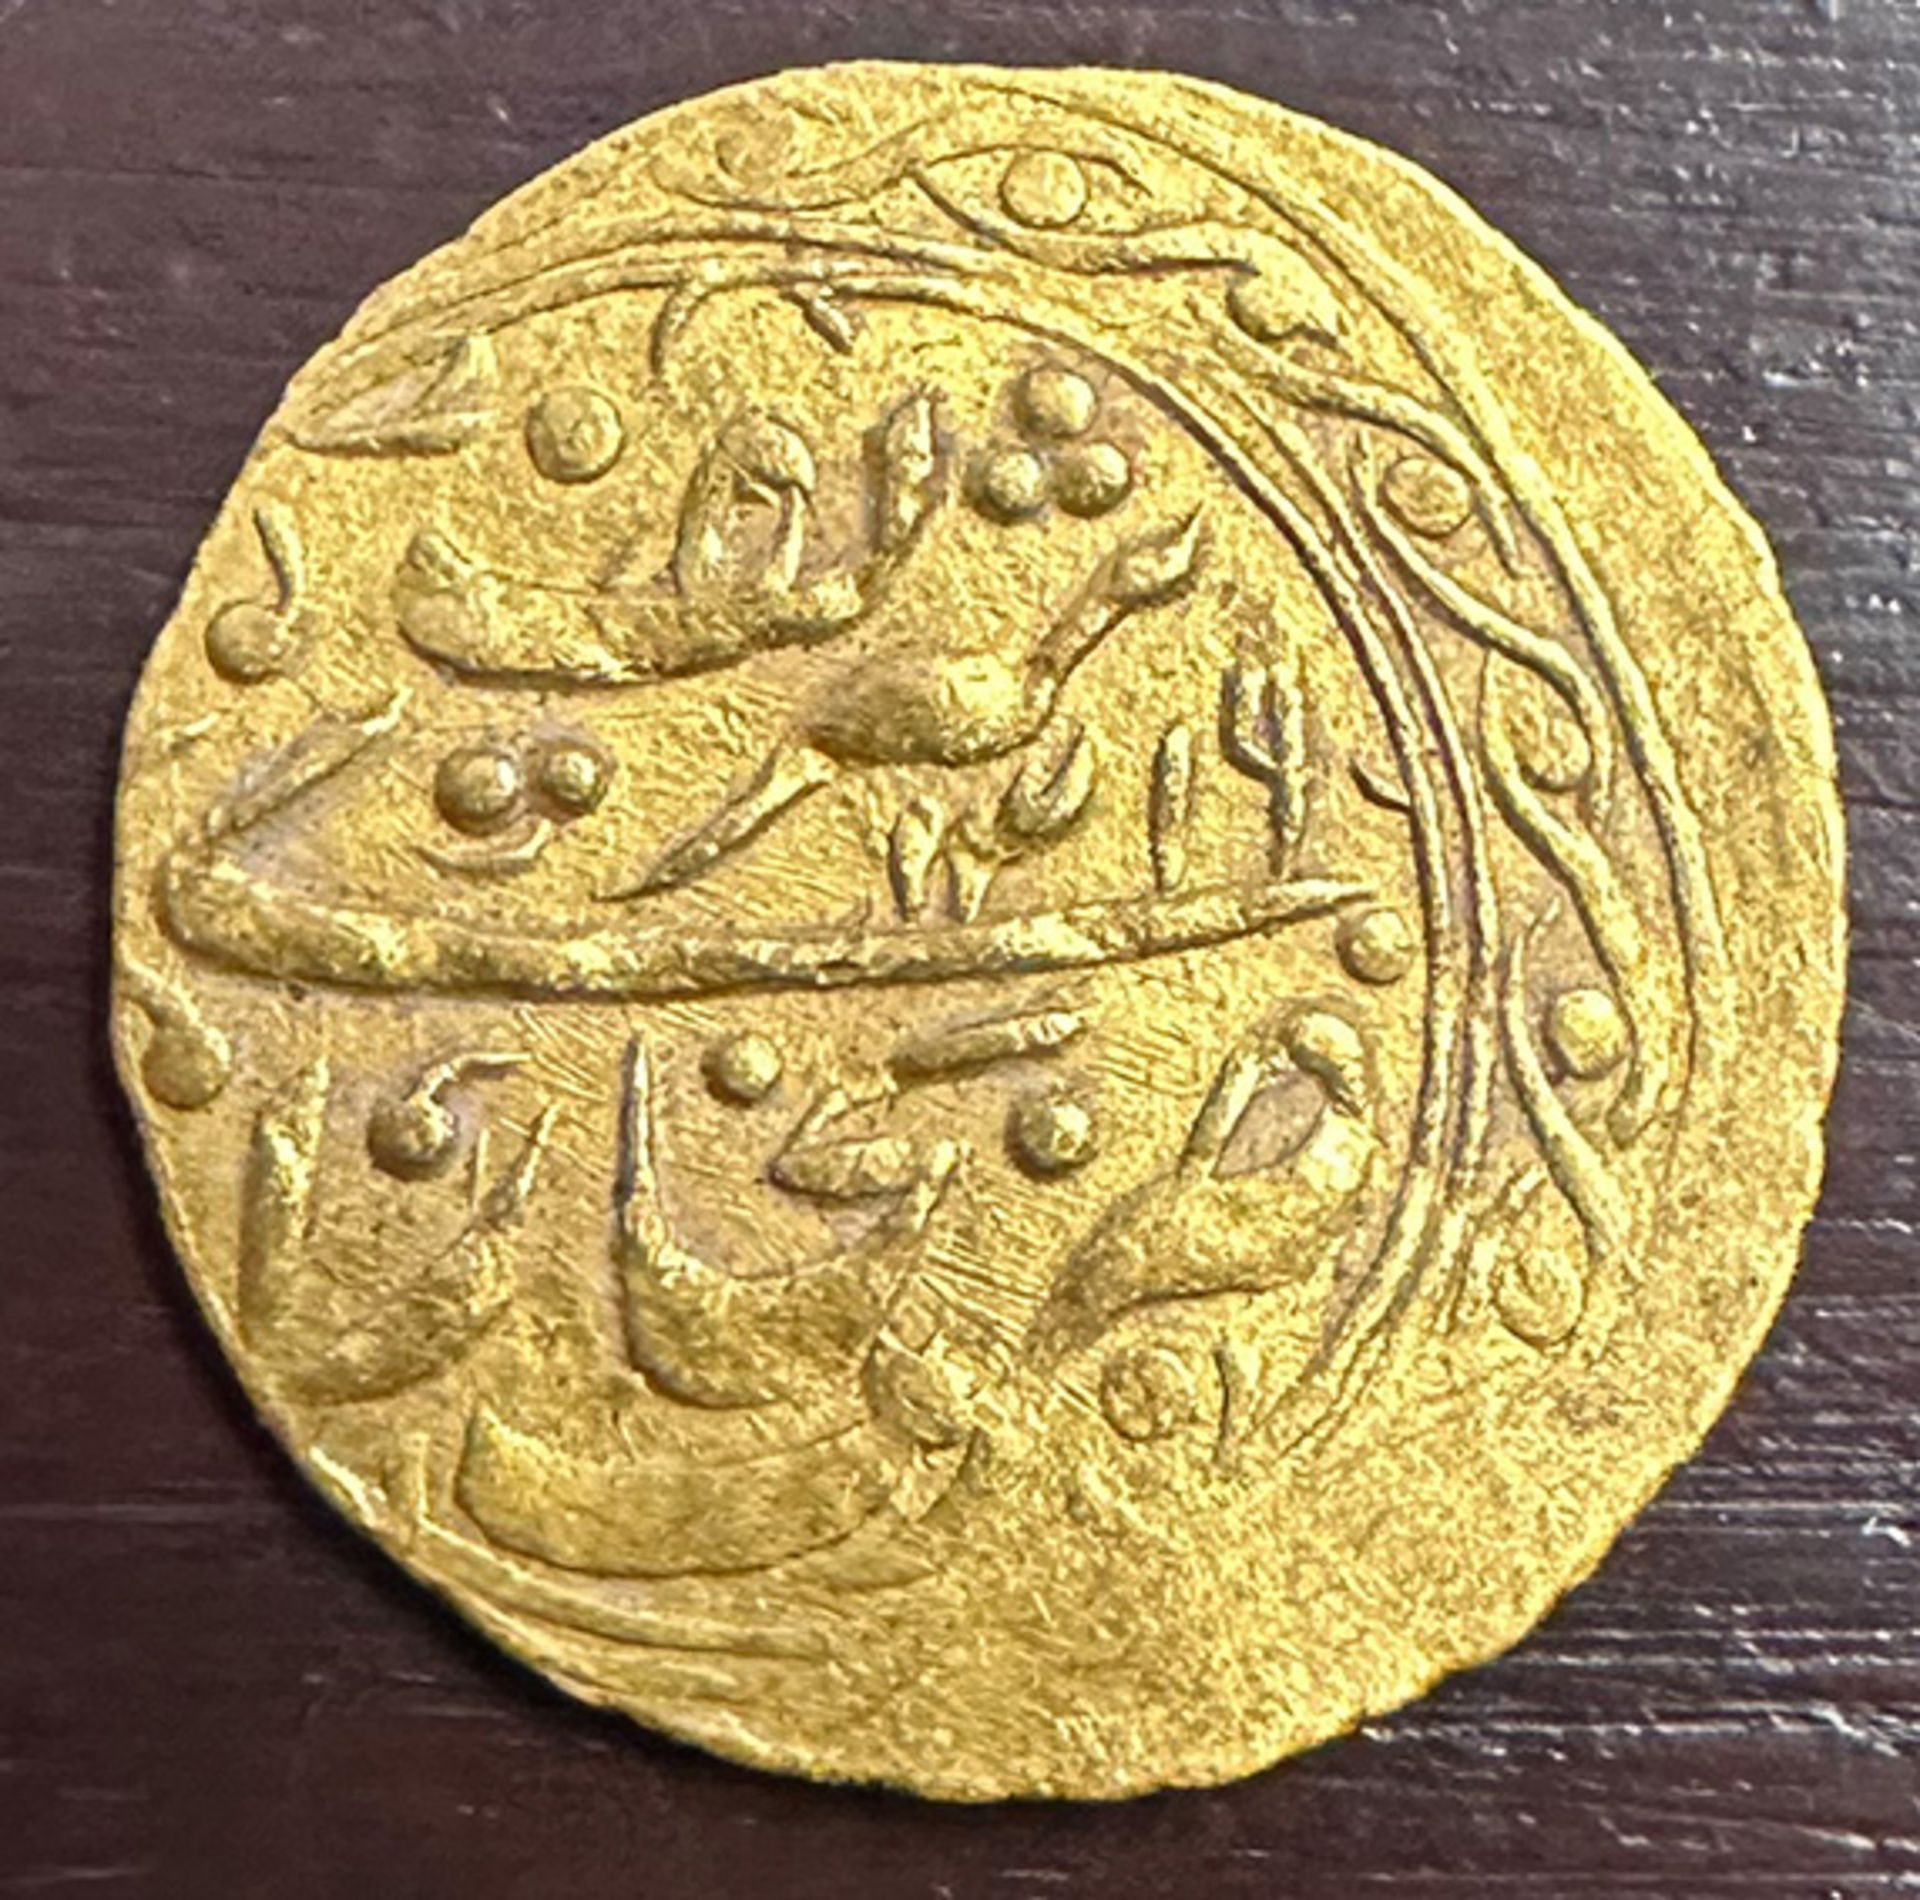 Goldmünze Bukhara, Khanate, Gold, 4,55 g. Gold coin Bukhara, Khanate, gold, 4.55 g